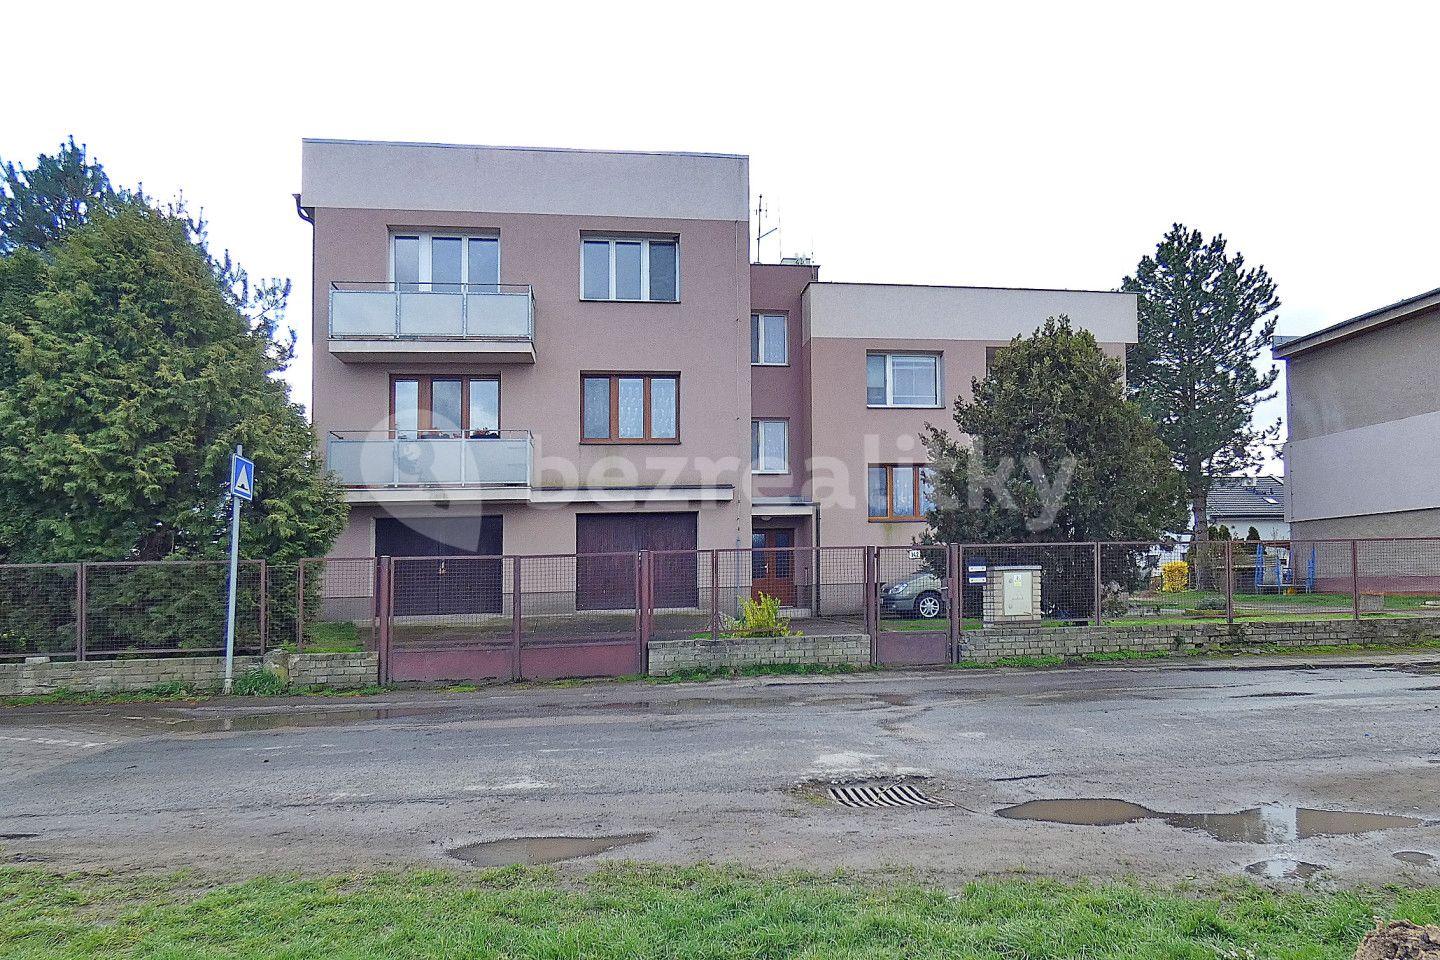 3 bedroom flat for sale, 75 m², Hlízov, Středočeský Region